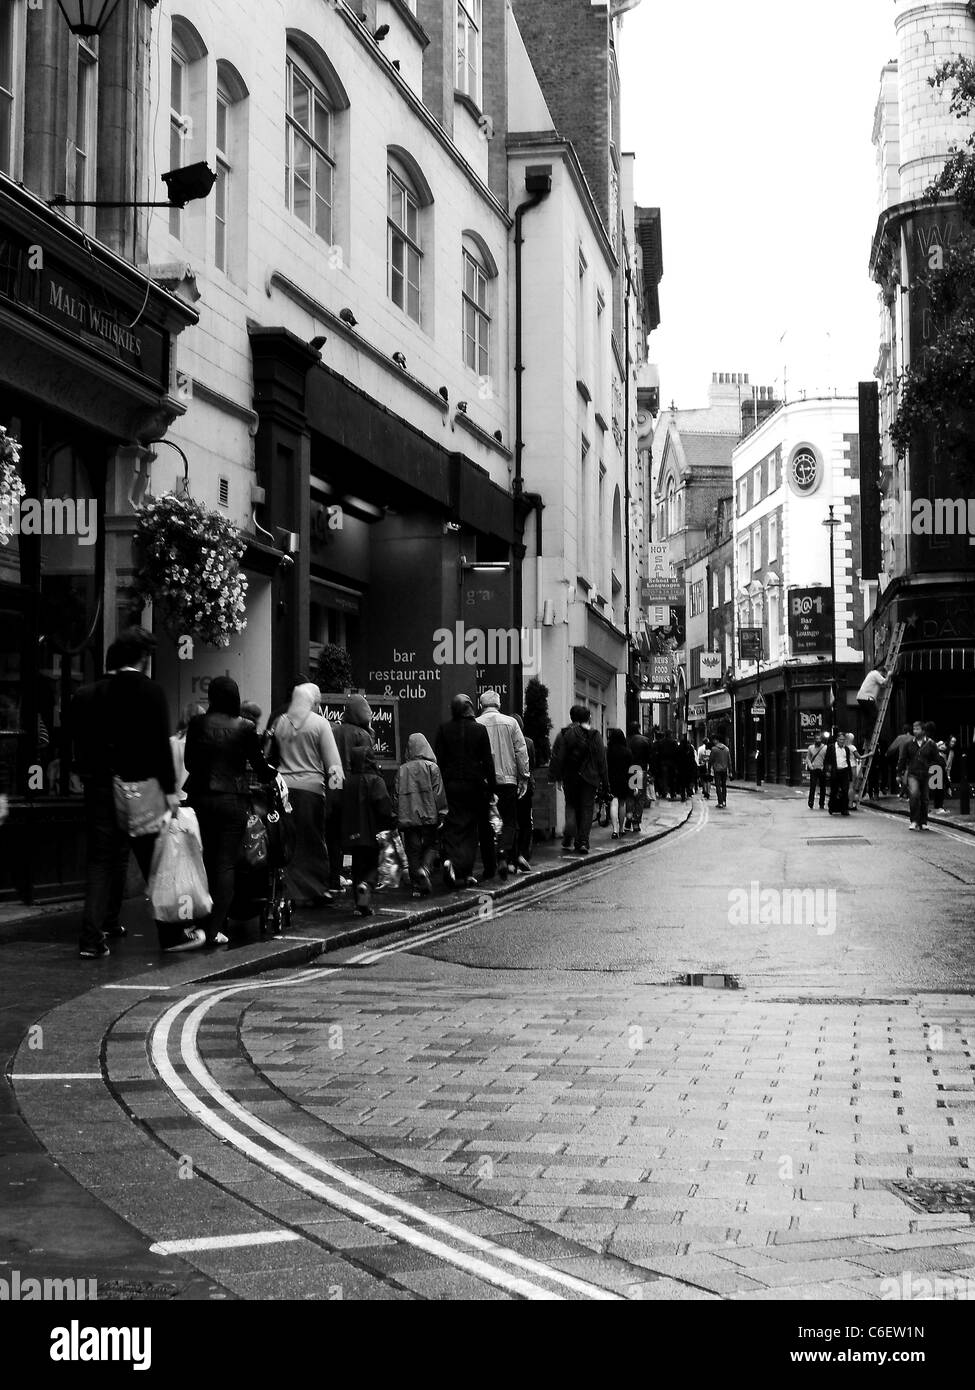 La ville de Londres Royaume-Uni Grande-Bretagne Royaume-Uni street personnes bus bâtiments post box mono noir et blanc b&w tourisme carte postale Banque D'Images